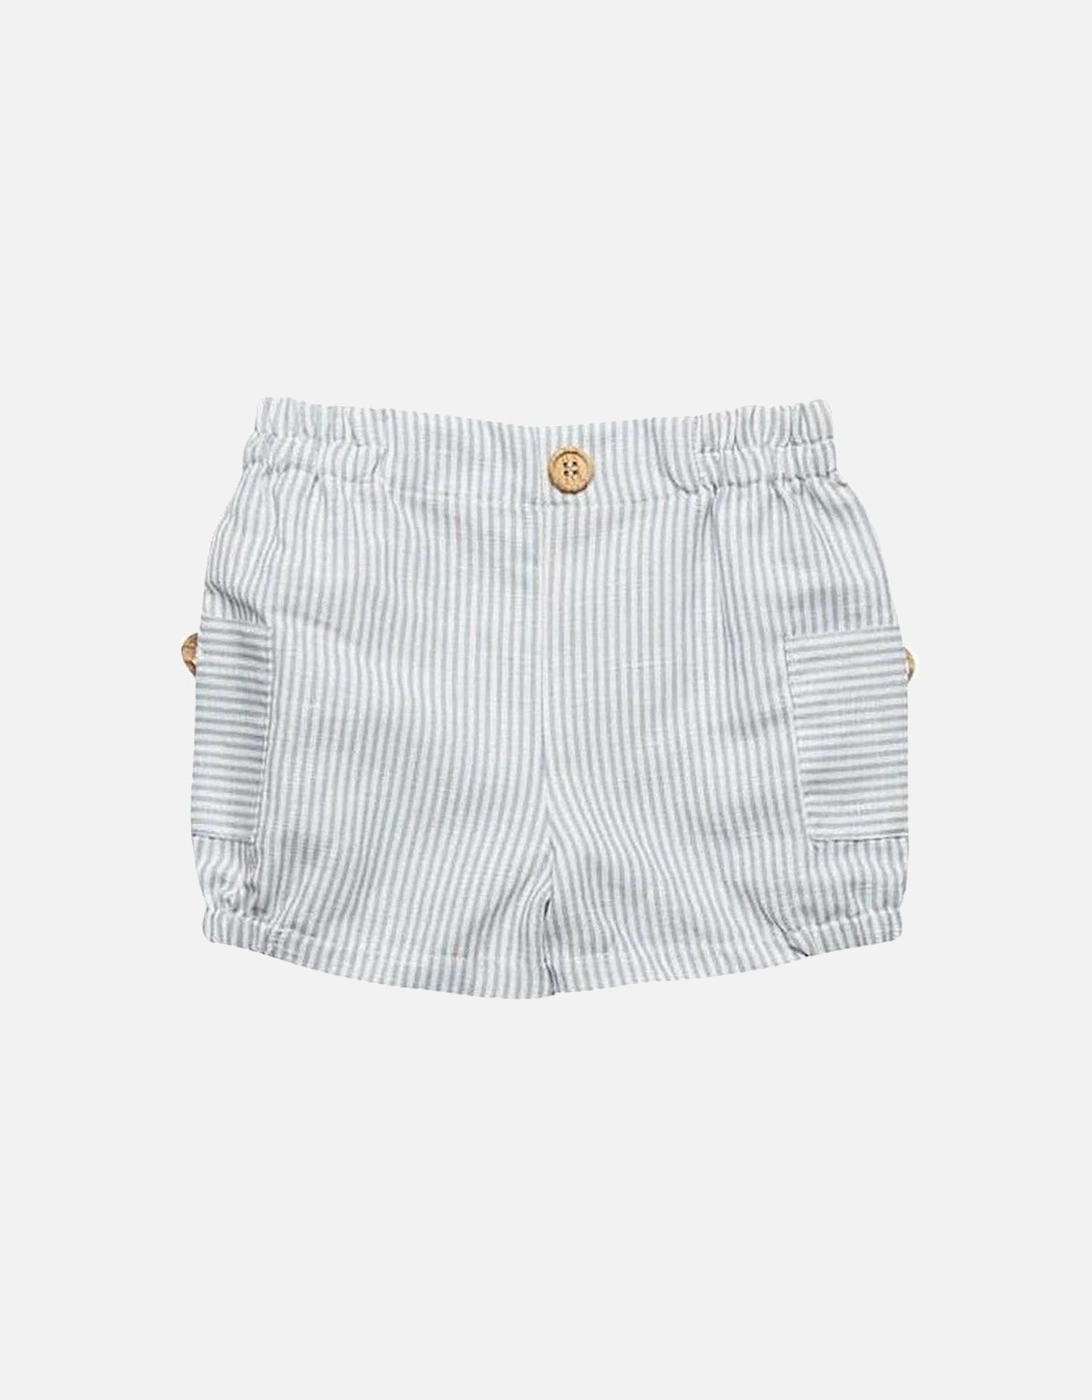 Boys Grey Stripe Shorts, 2 of 1